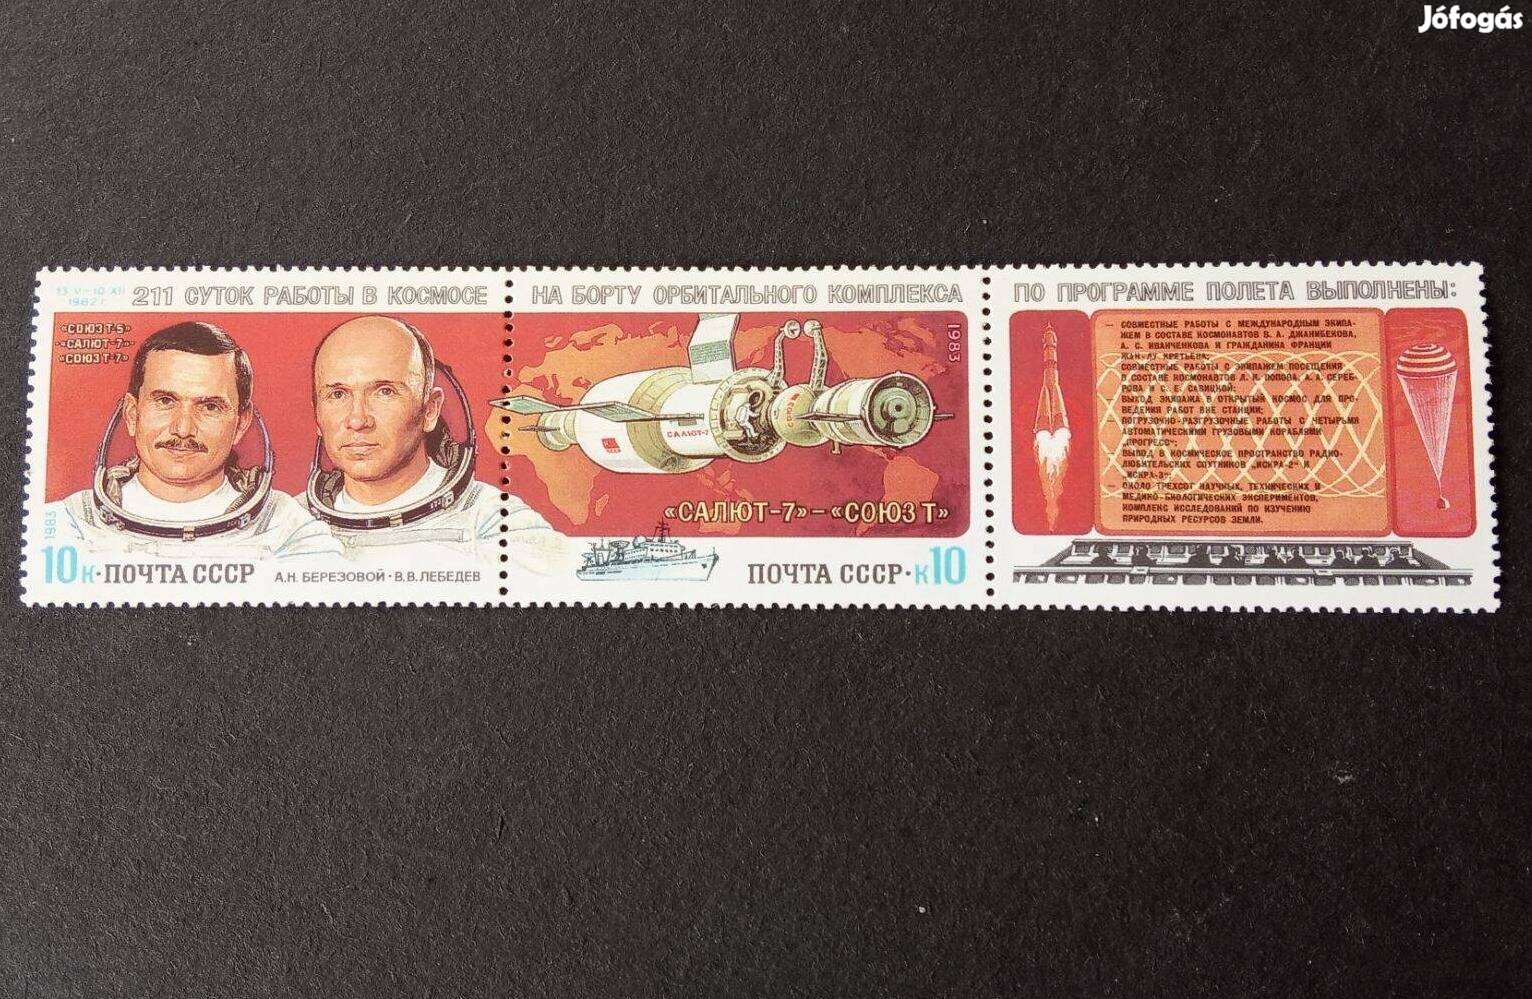 1983 Űrkutatás a Szaljut-7 - Szojuz-T által komplett postatiszta bély